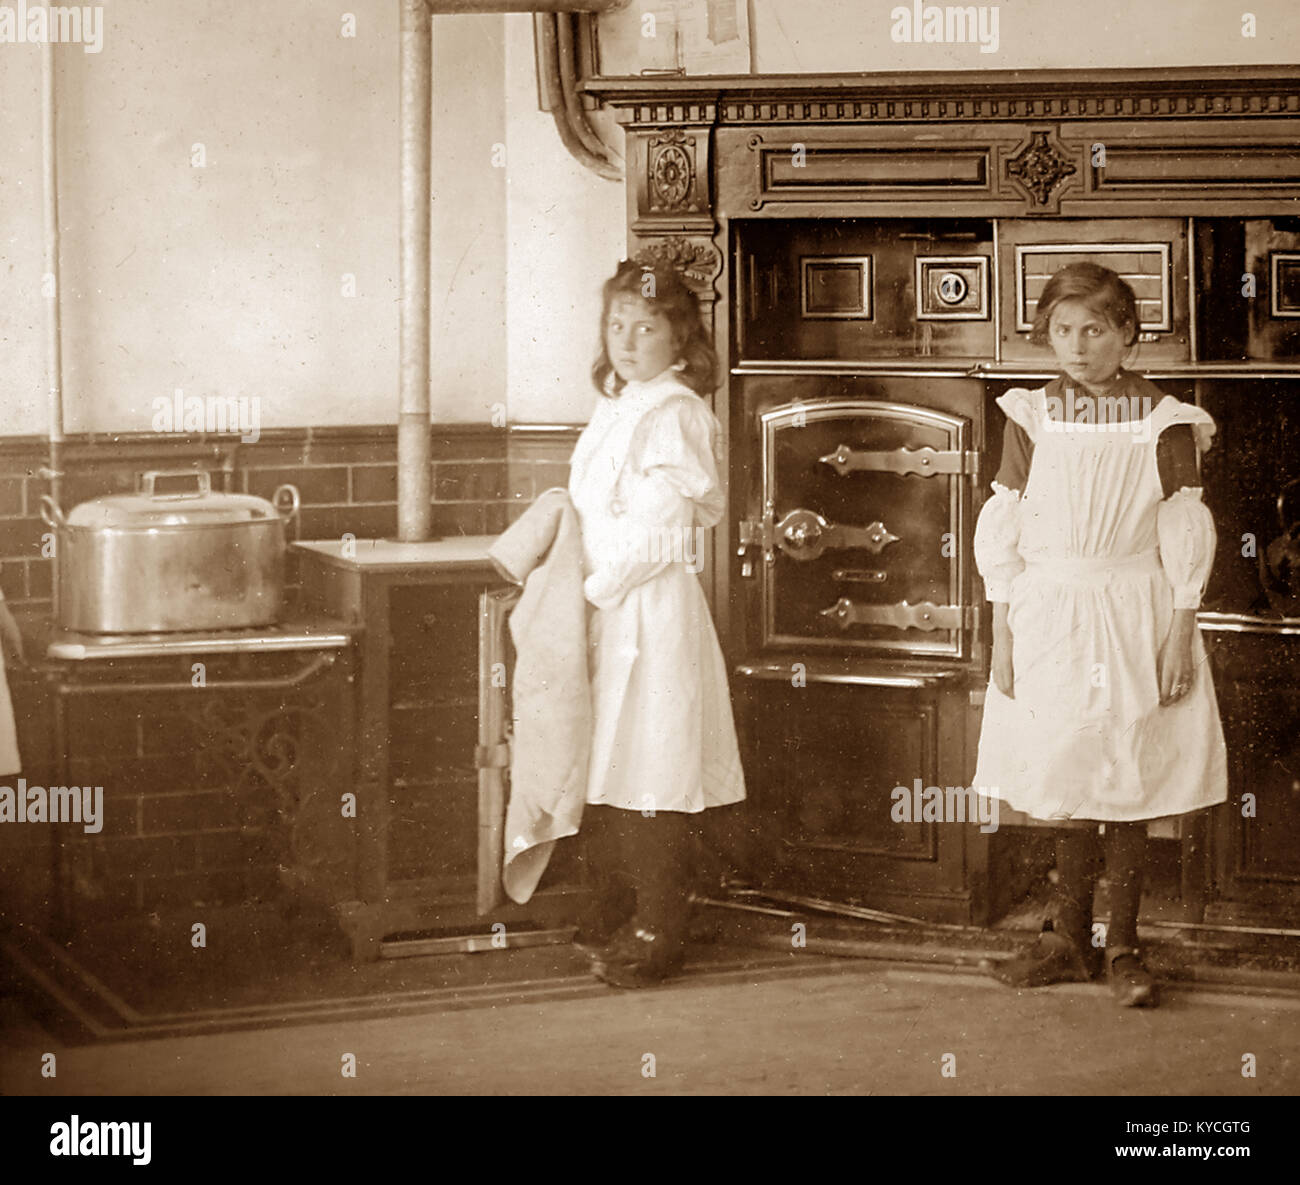 Domestic servants, England, Victorian period Stock Photo